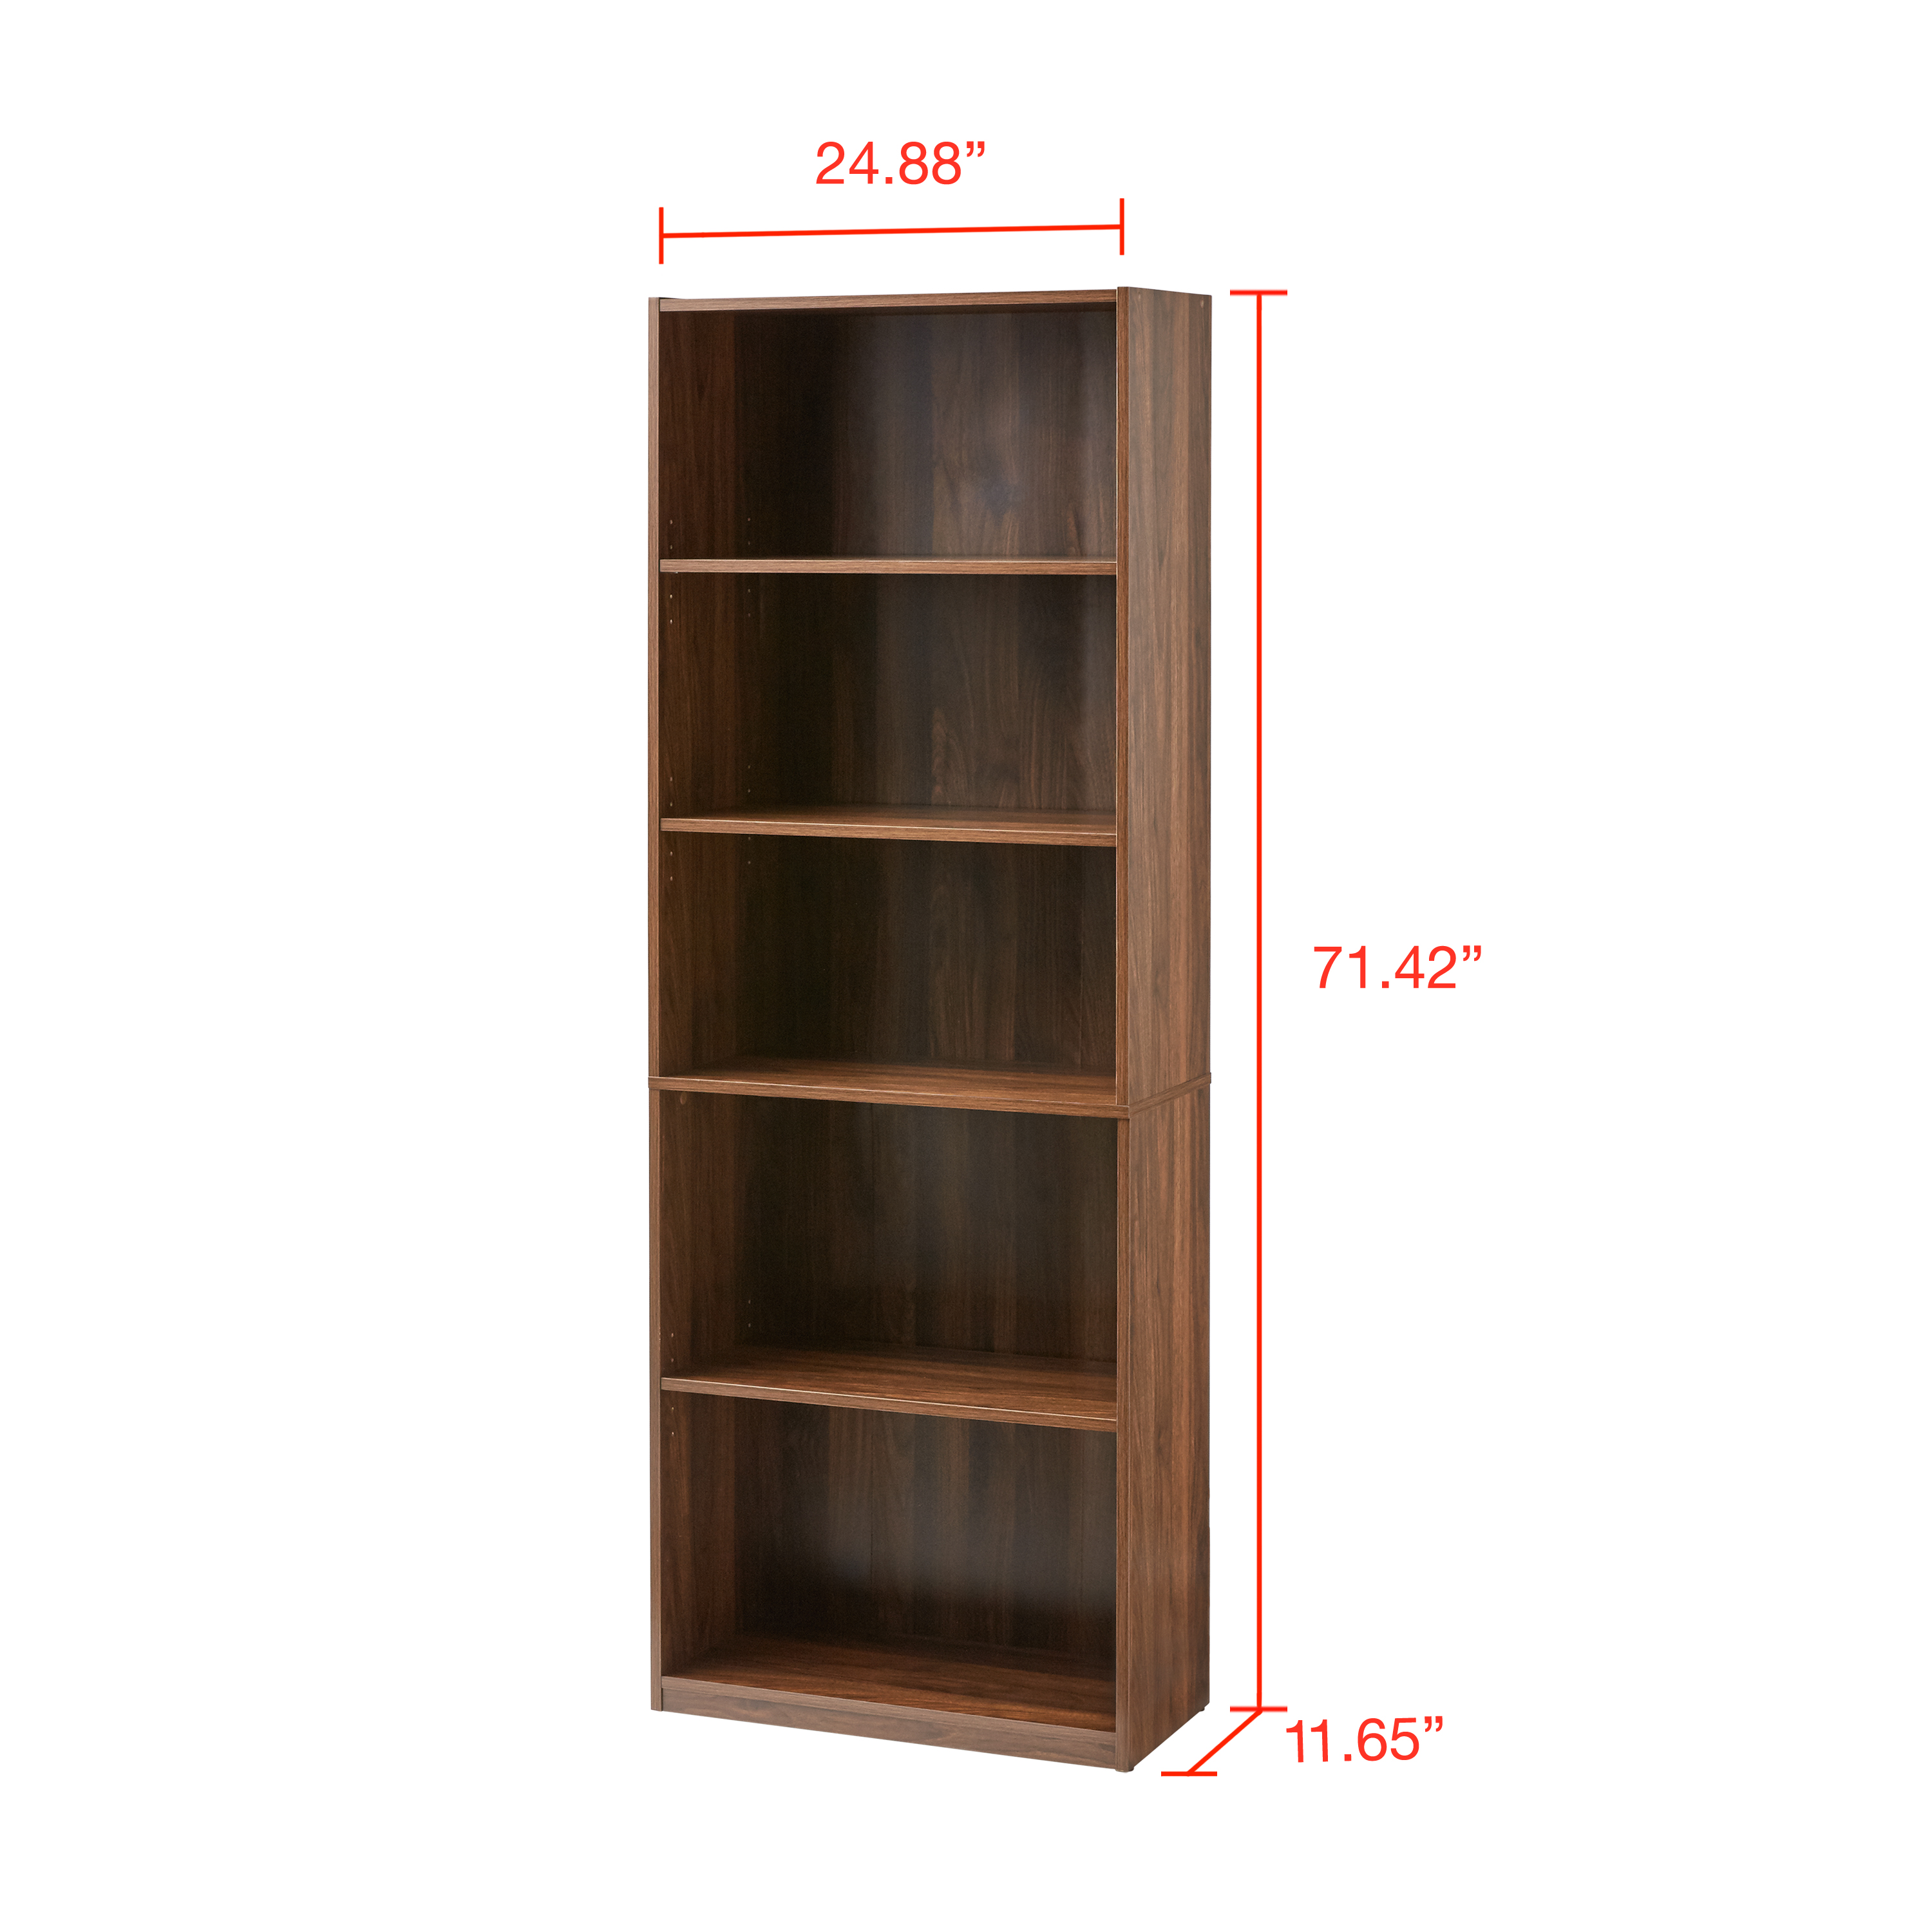 Mainstays 5-Shelf Bookcase with Adjustable Shelves, Canyon Walnut - image 5 of 5